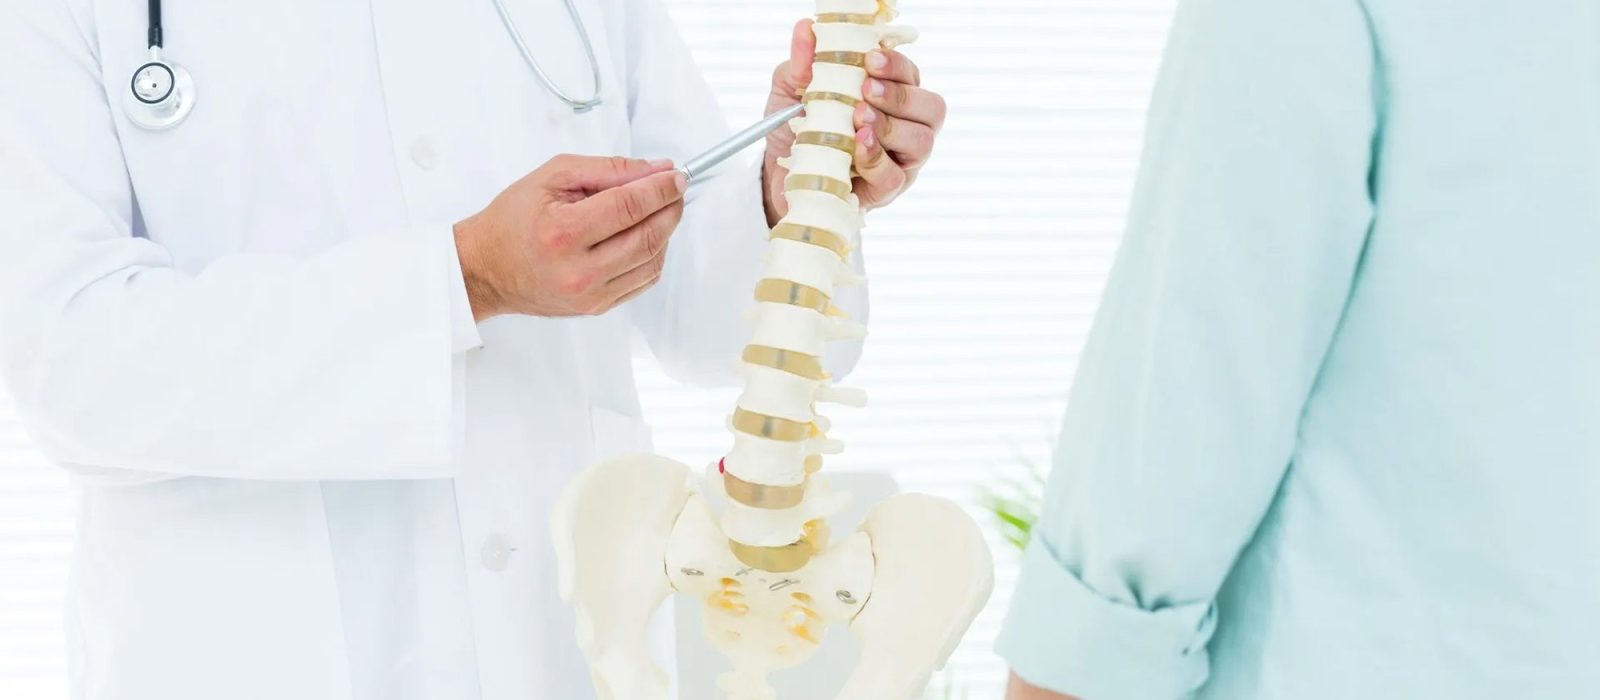 Medico señalando vertebras de la columna a un paciente